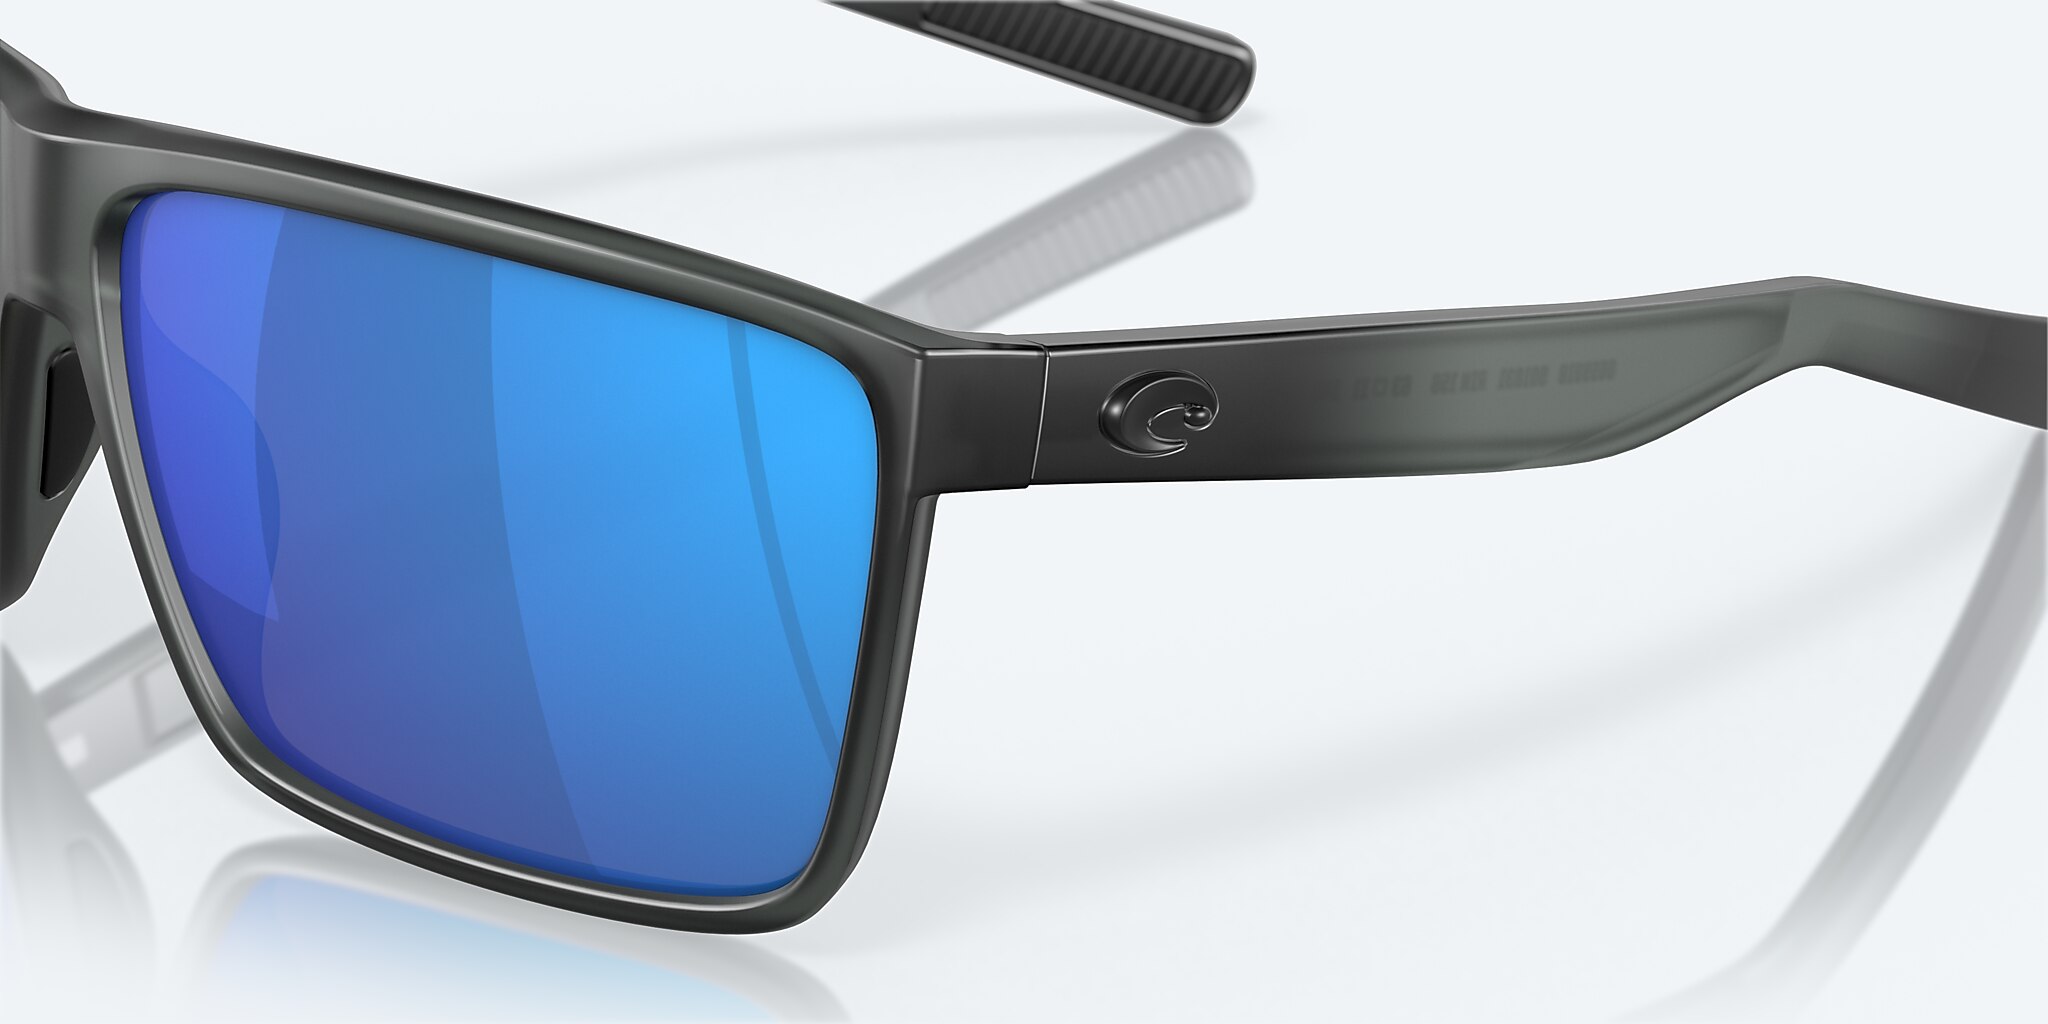 Costa Del Mar Rincon Sunglasses Matte Smoke Crystal / Blue Mirror 580G